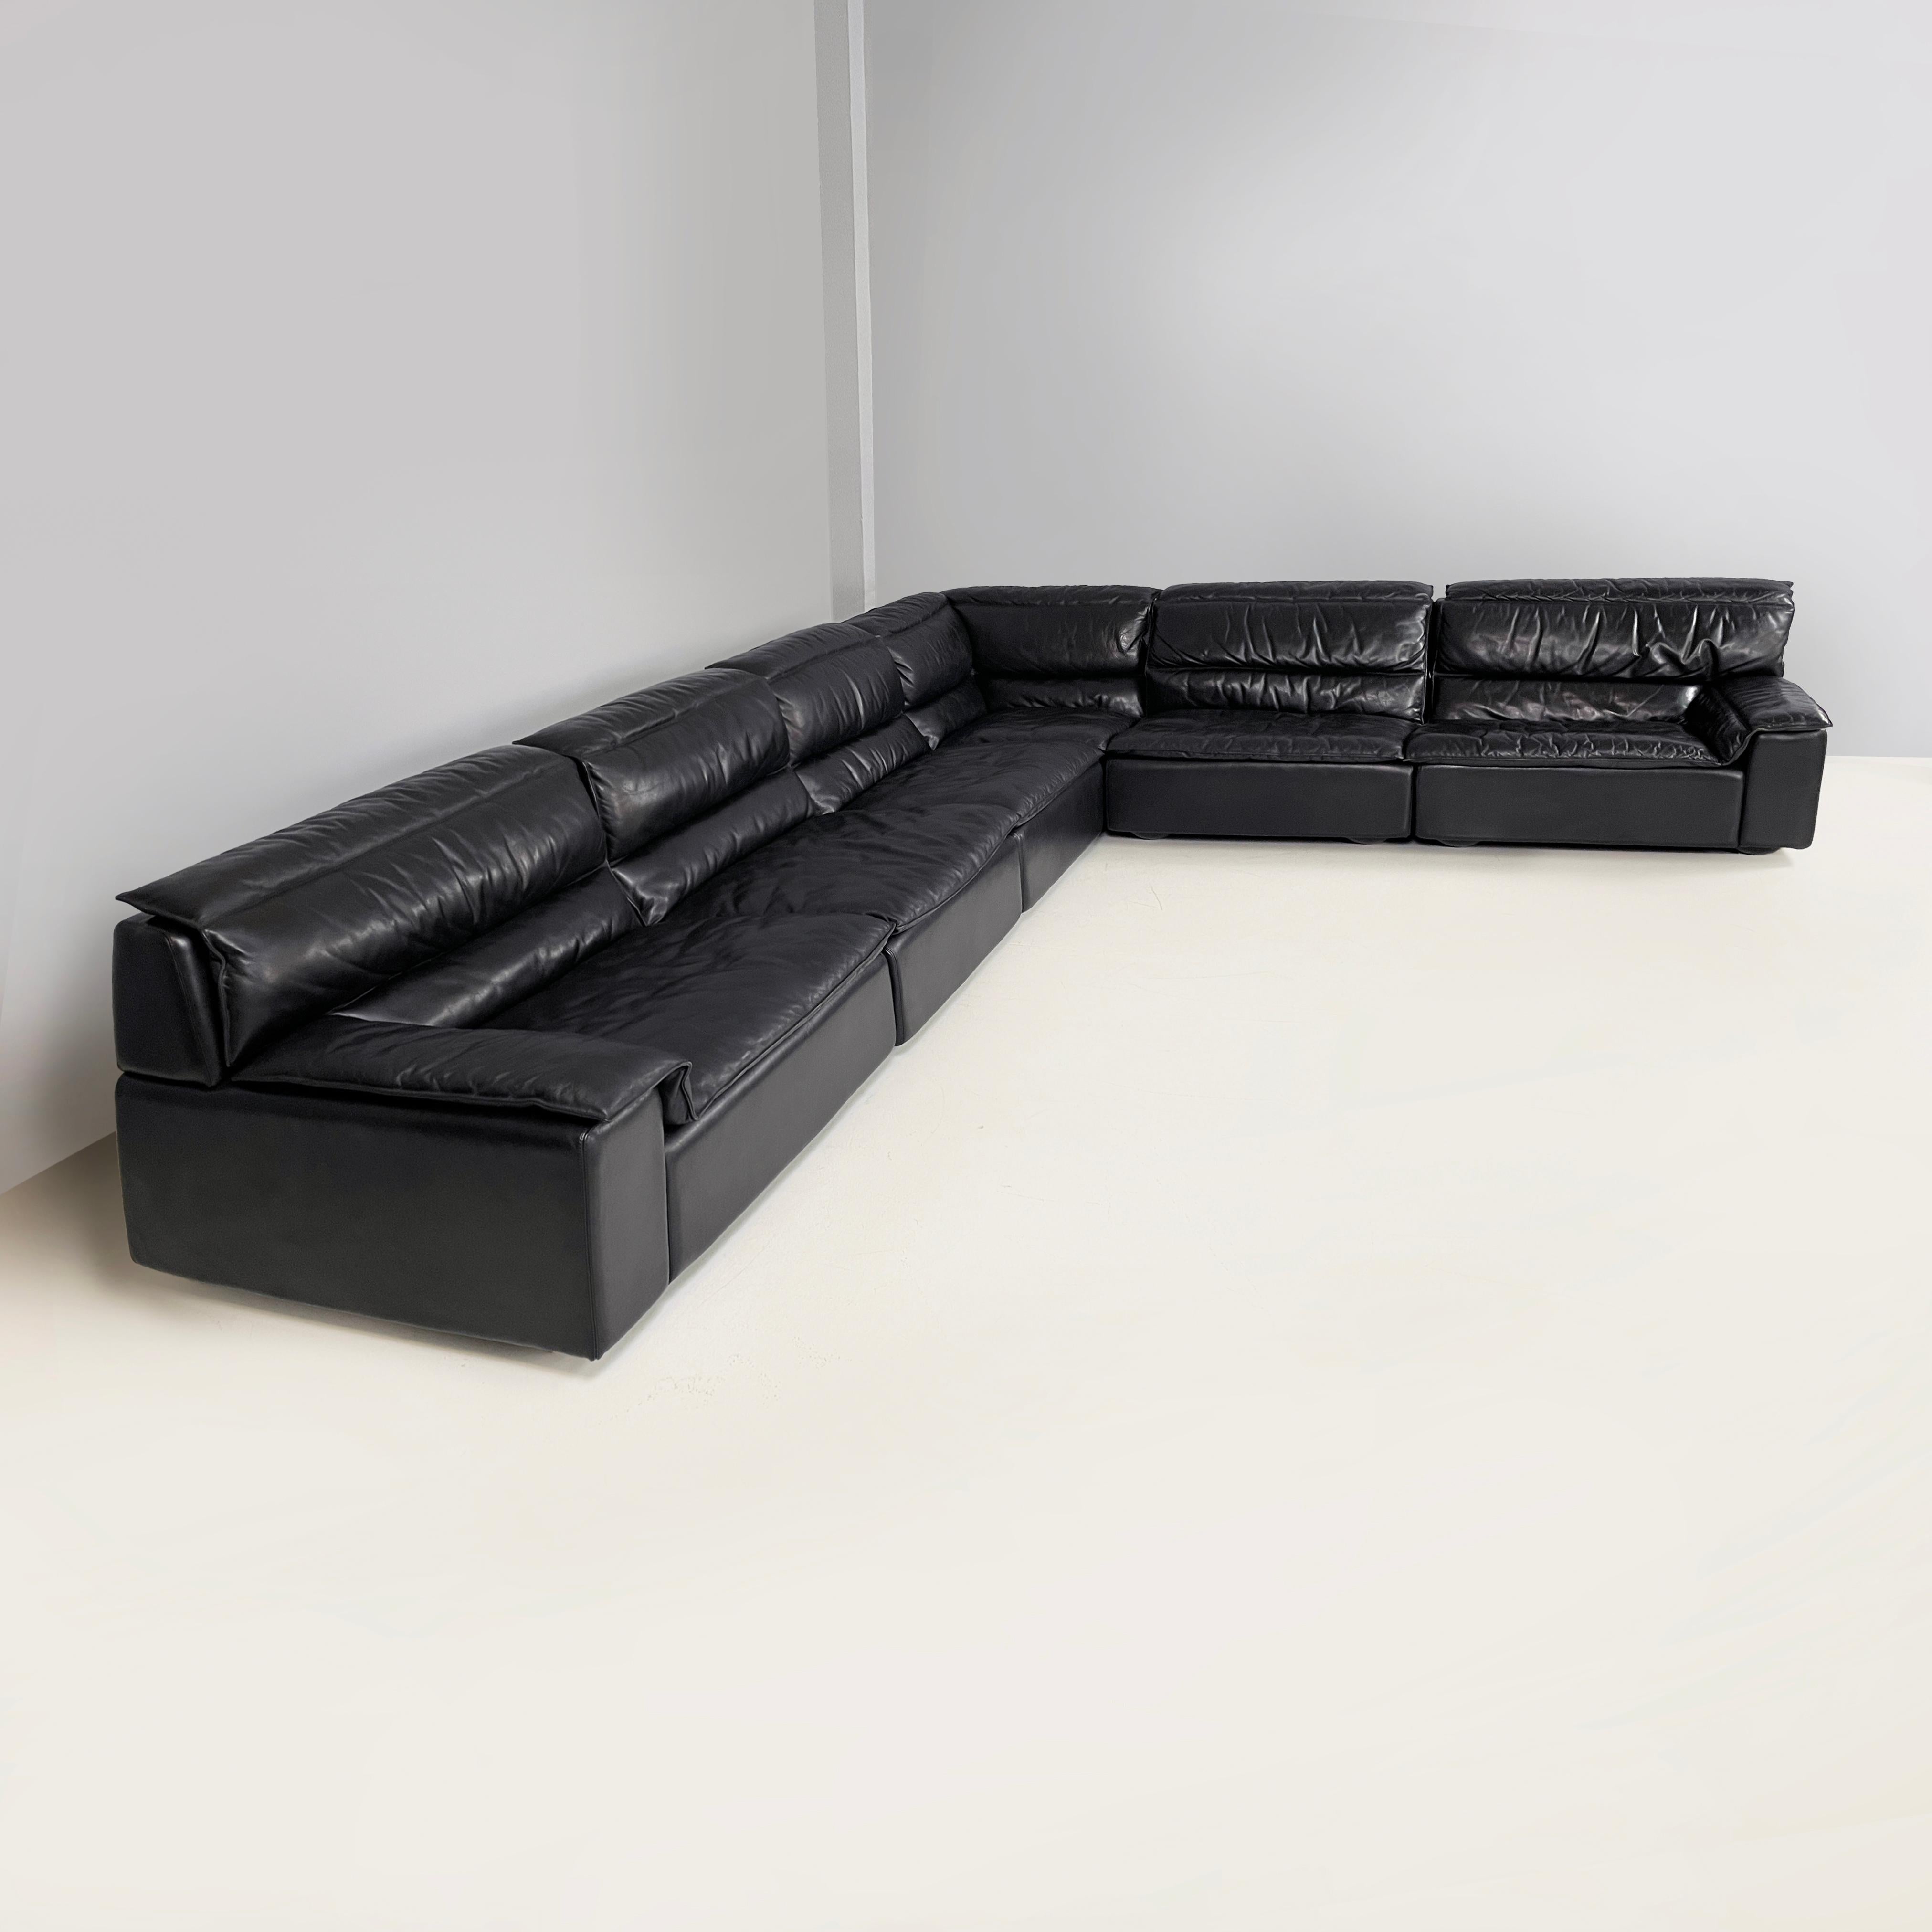 Late 20th Century Italian modern black leather sofa Bogo Carlo Bartoli Rossi for Albizzate, 1970s For Sale